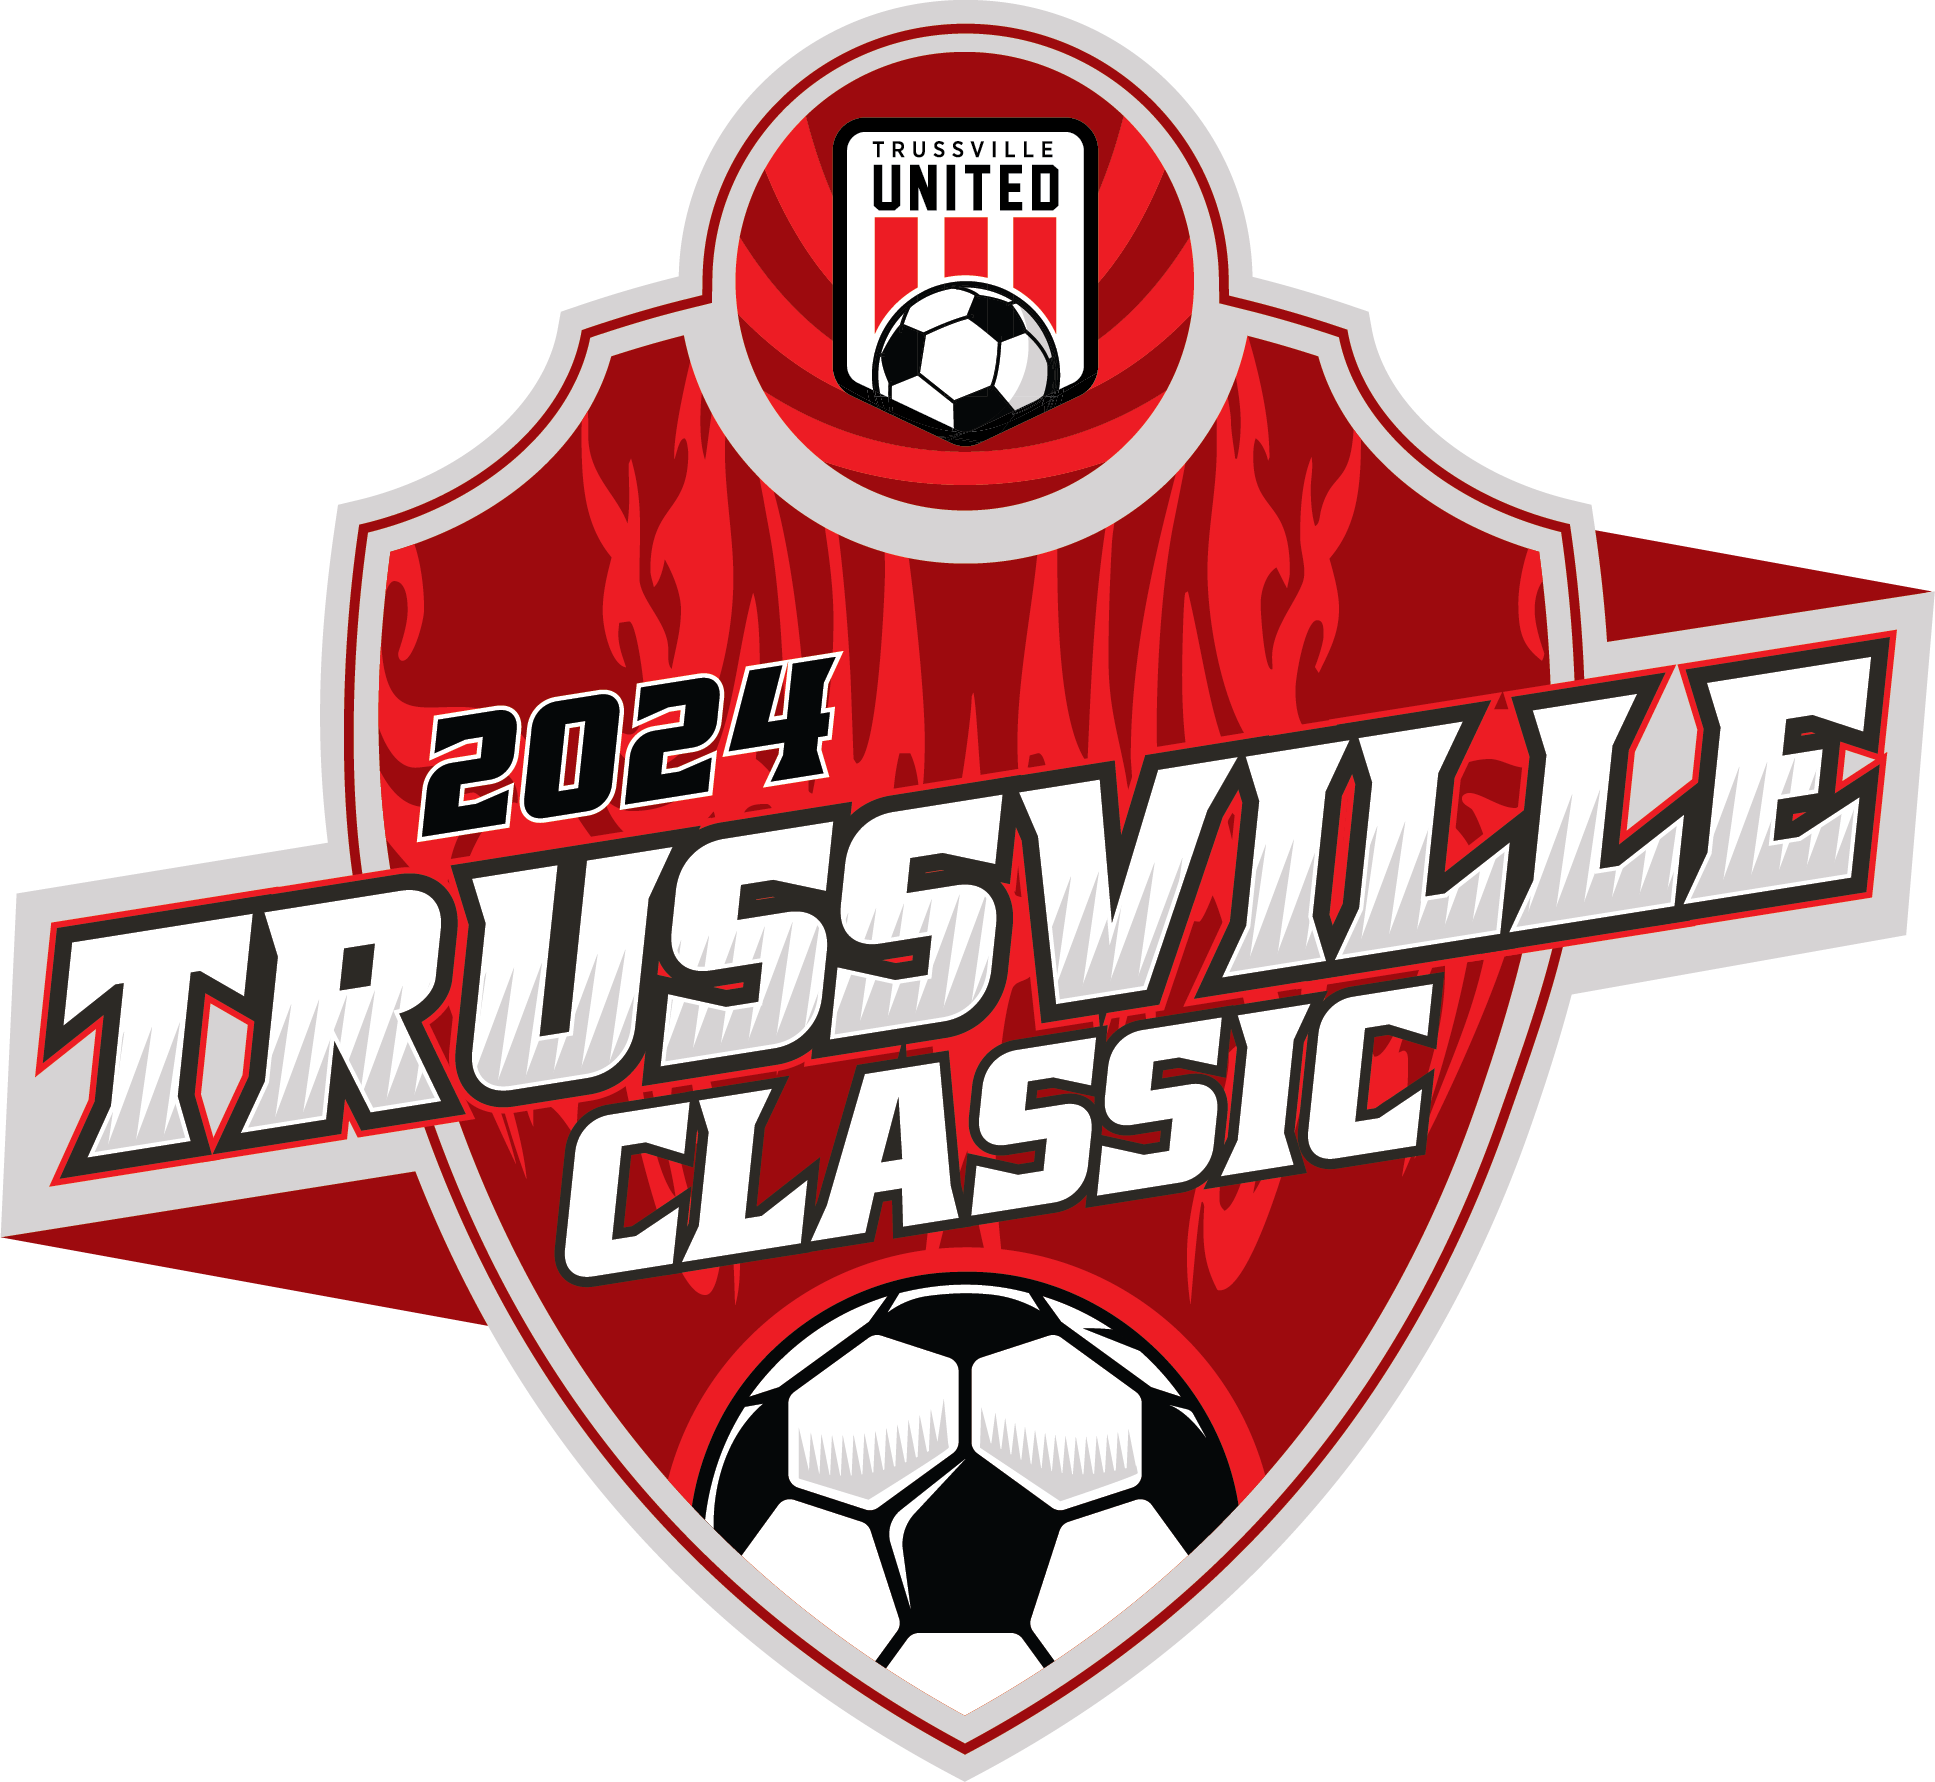 2024 Trussville Classic